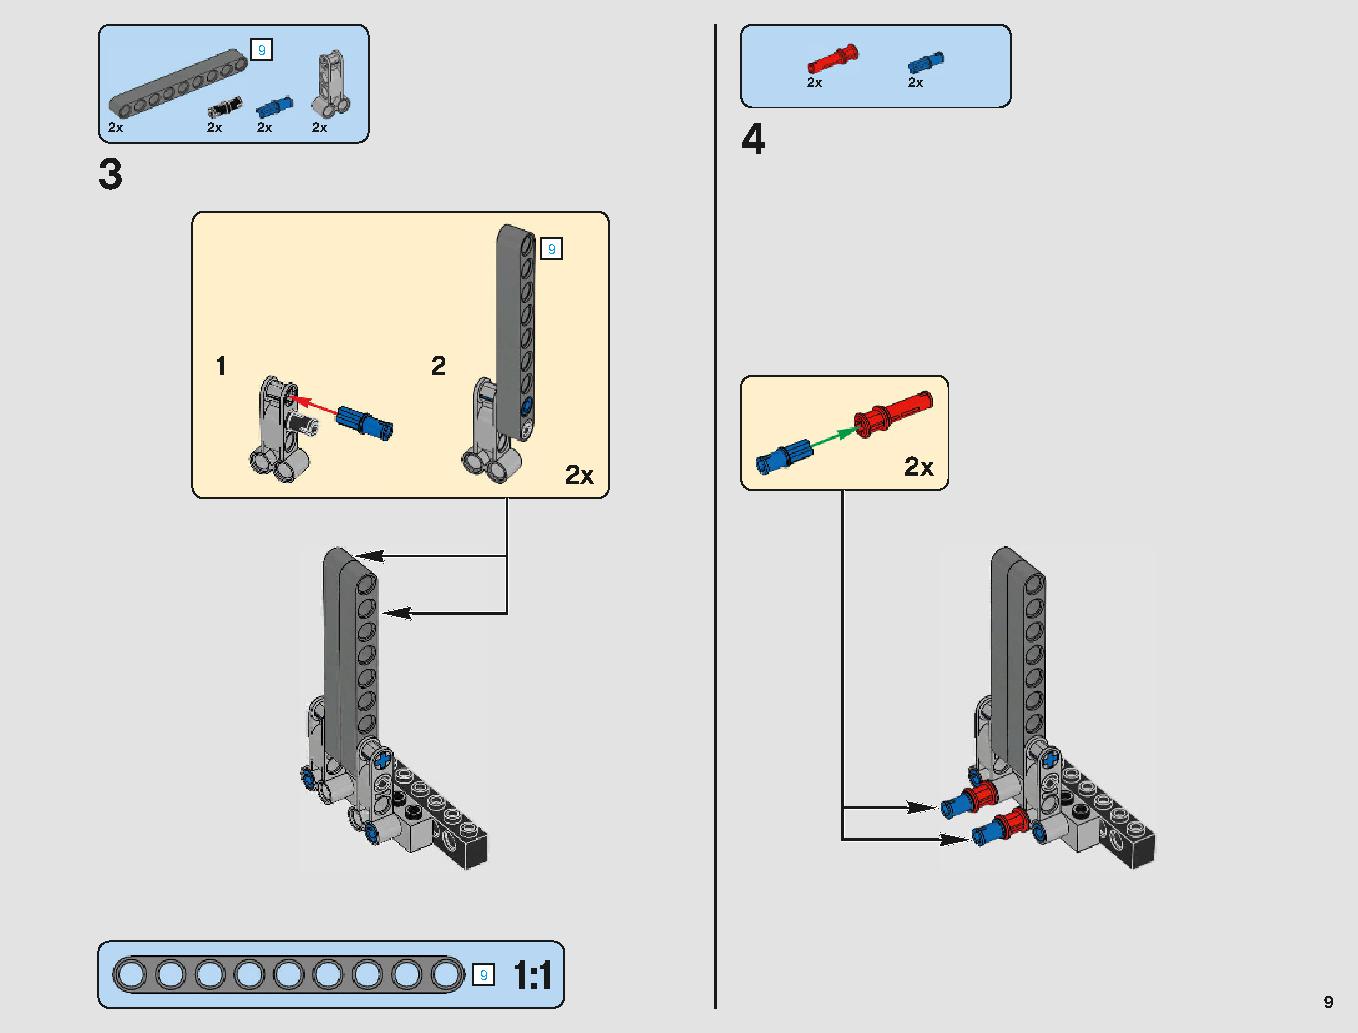 サンドクローラー 75220 レゴの商品情報 レゴの説明書・組立方法 9 page